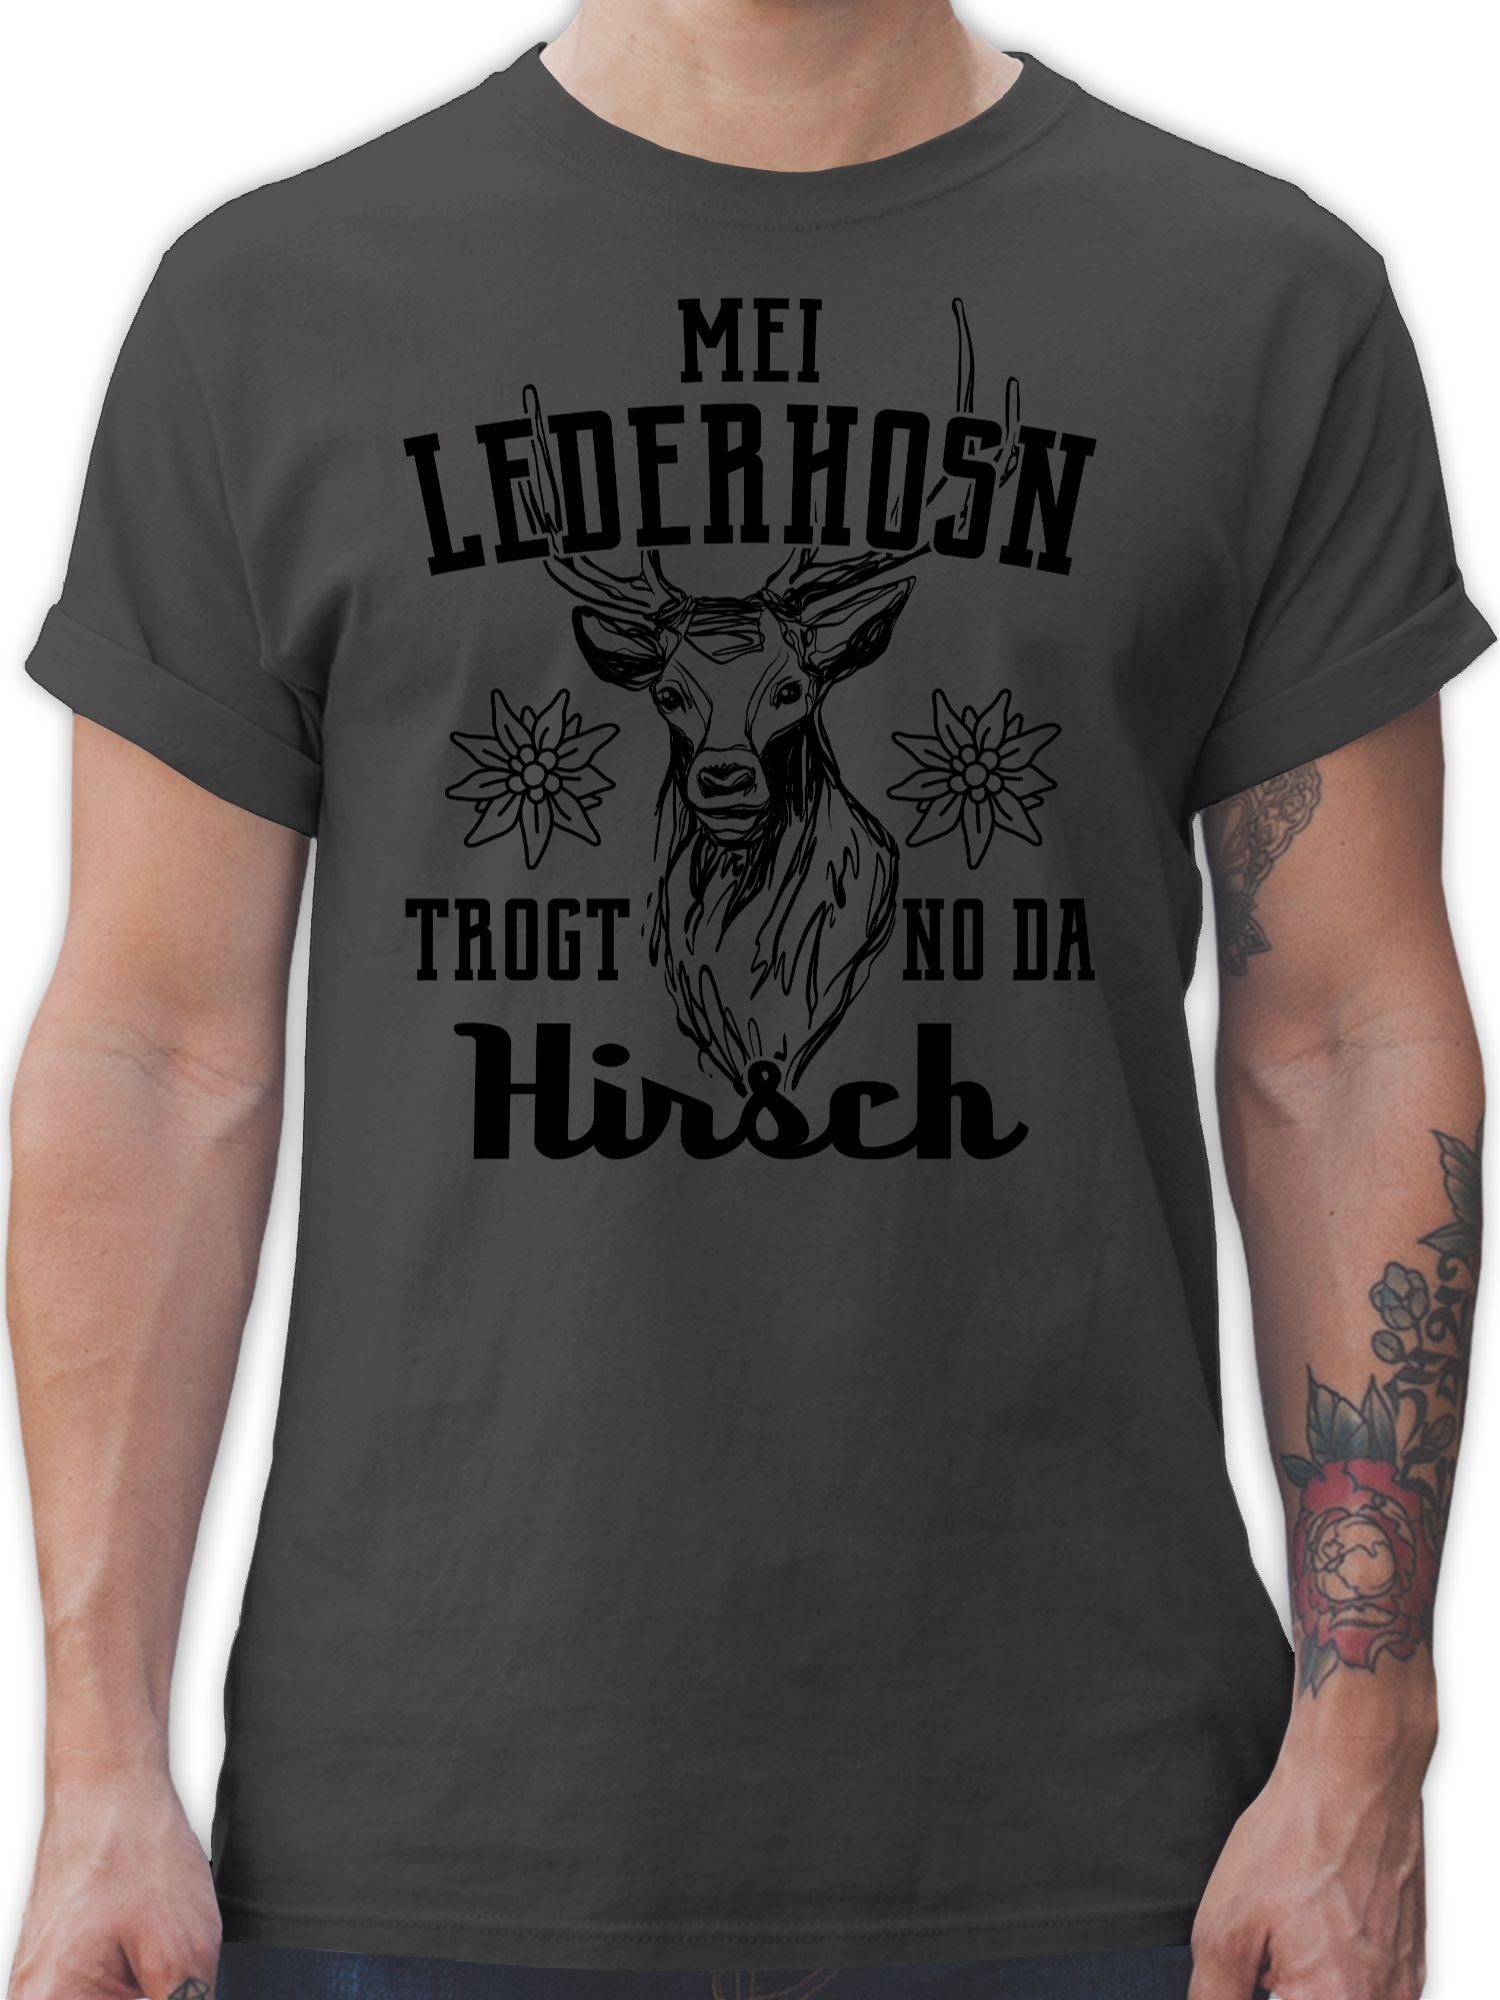 Shirtracer T-Shirt Mei Lederhosn trogt no da Hirsch - schwarz Mode für Oktoberfest Herren 1 Dunkelgrau